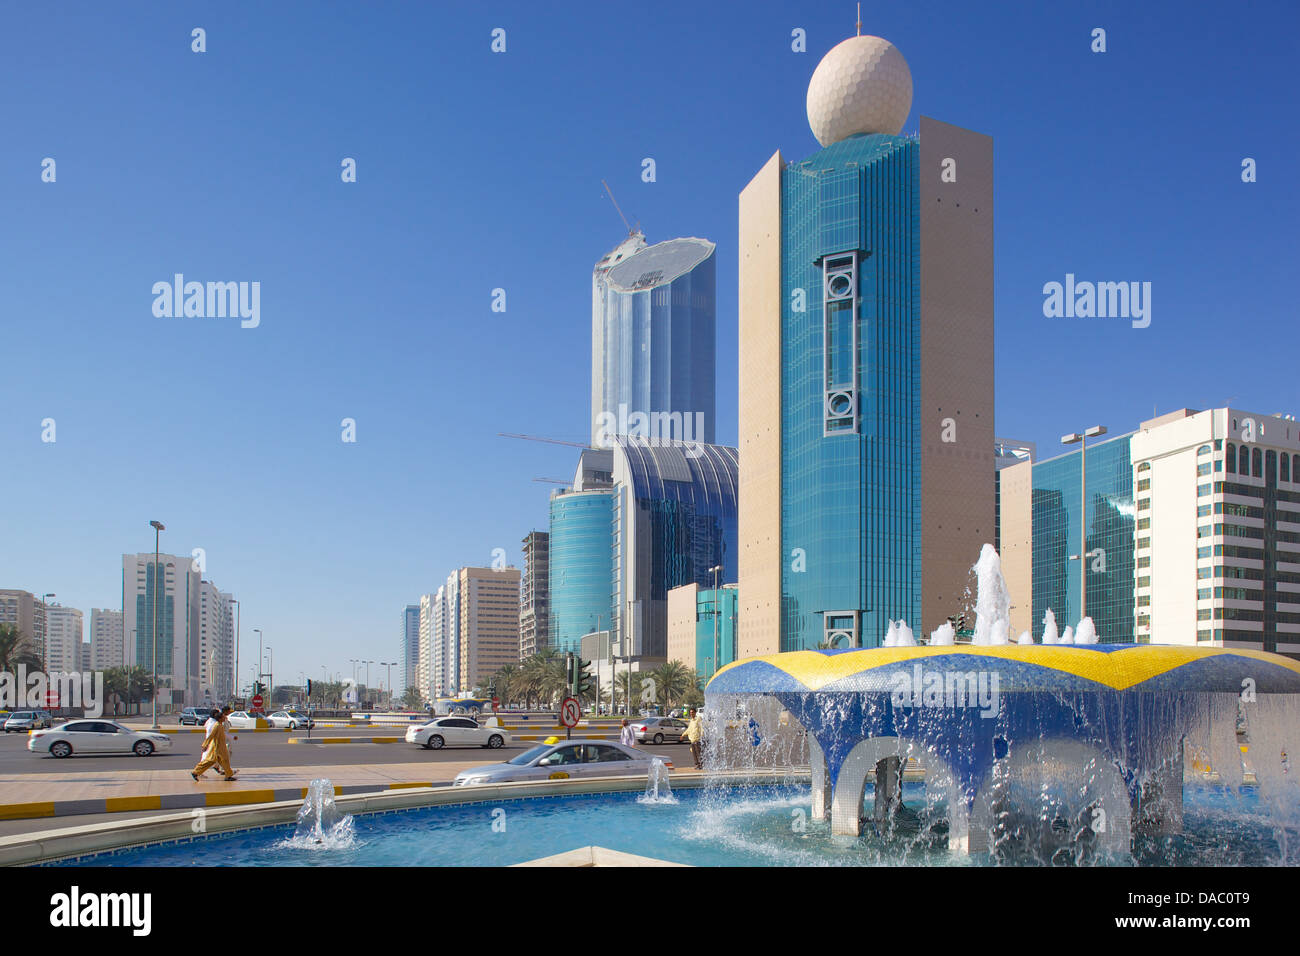 L'architecture contemporaine sur Rashid bin Saeed Al Maktoum Street, Abu Dhabi, Émirats arabes unis, Moyen Orient Banque D'Images